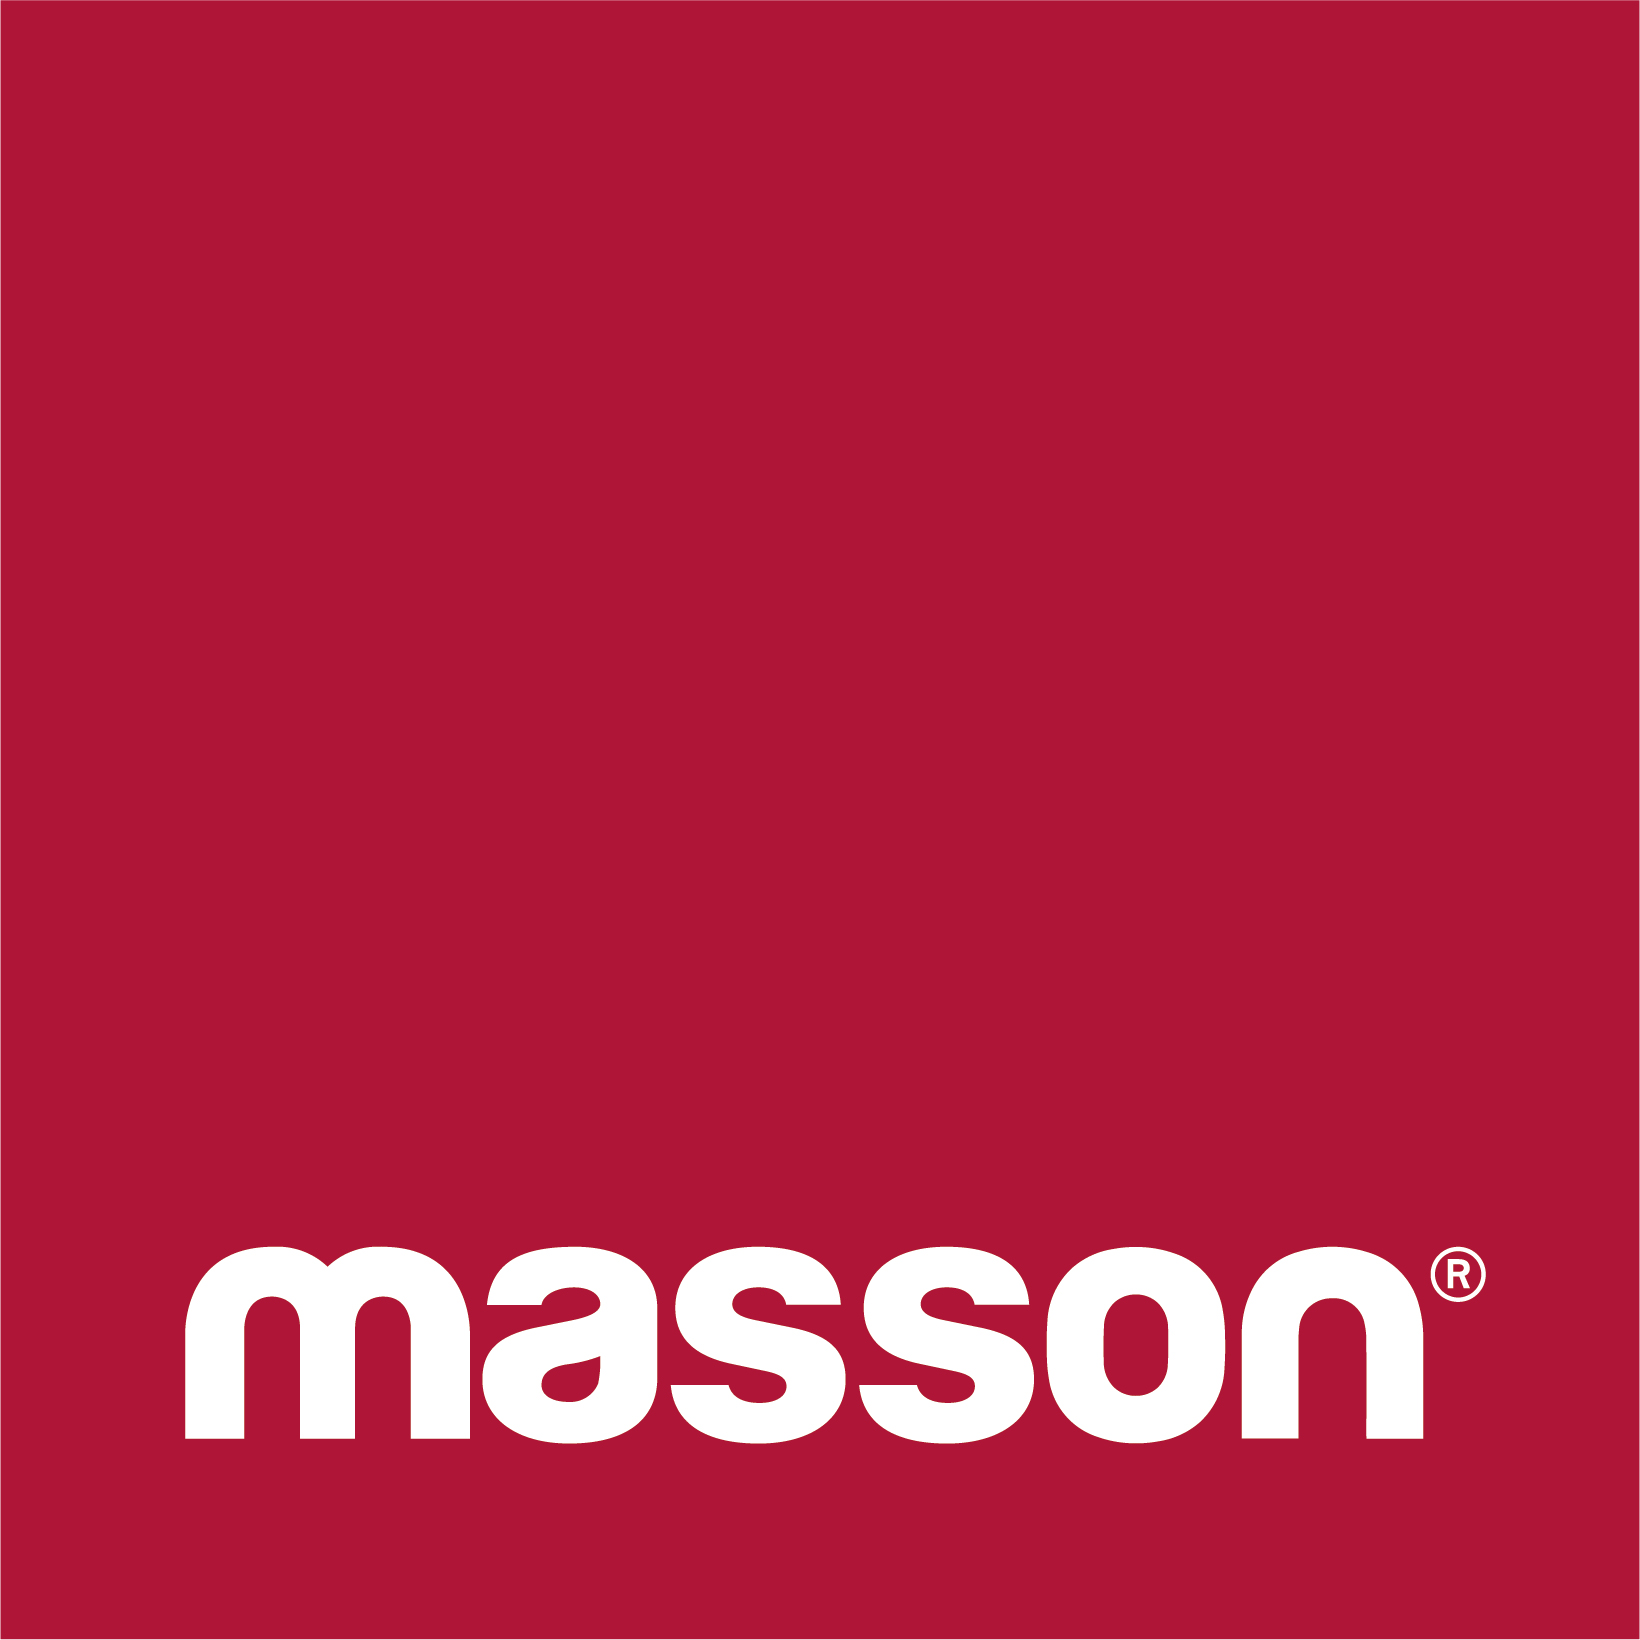 masson® | Wintergärten, Fiberglasmöbel und Dekorationen